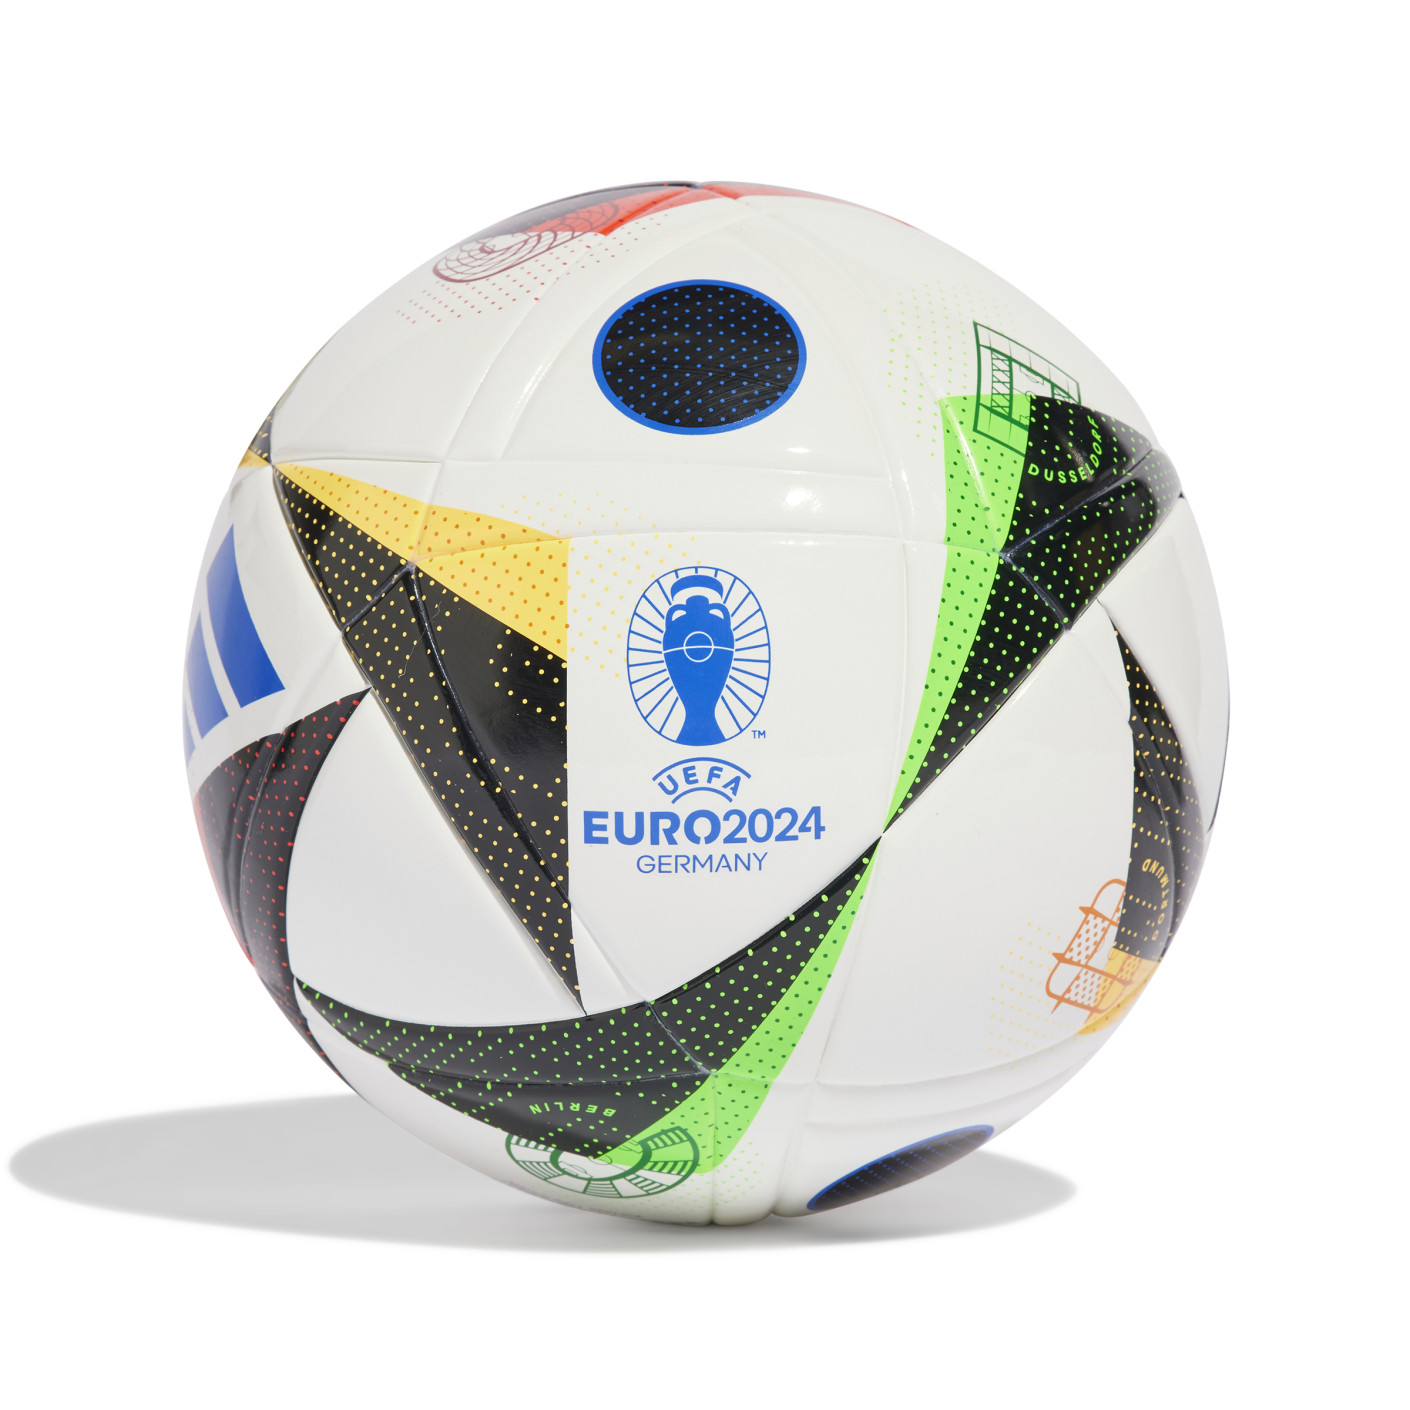 RTBF Sport on X: ⚽️ Voici le nouveau ballon pour l'Euro 2024